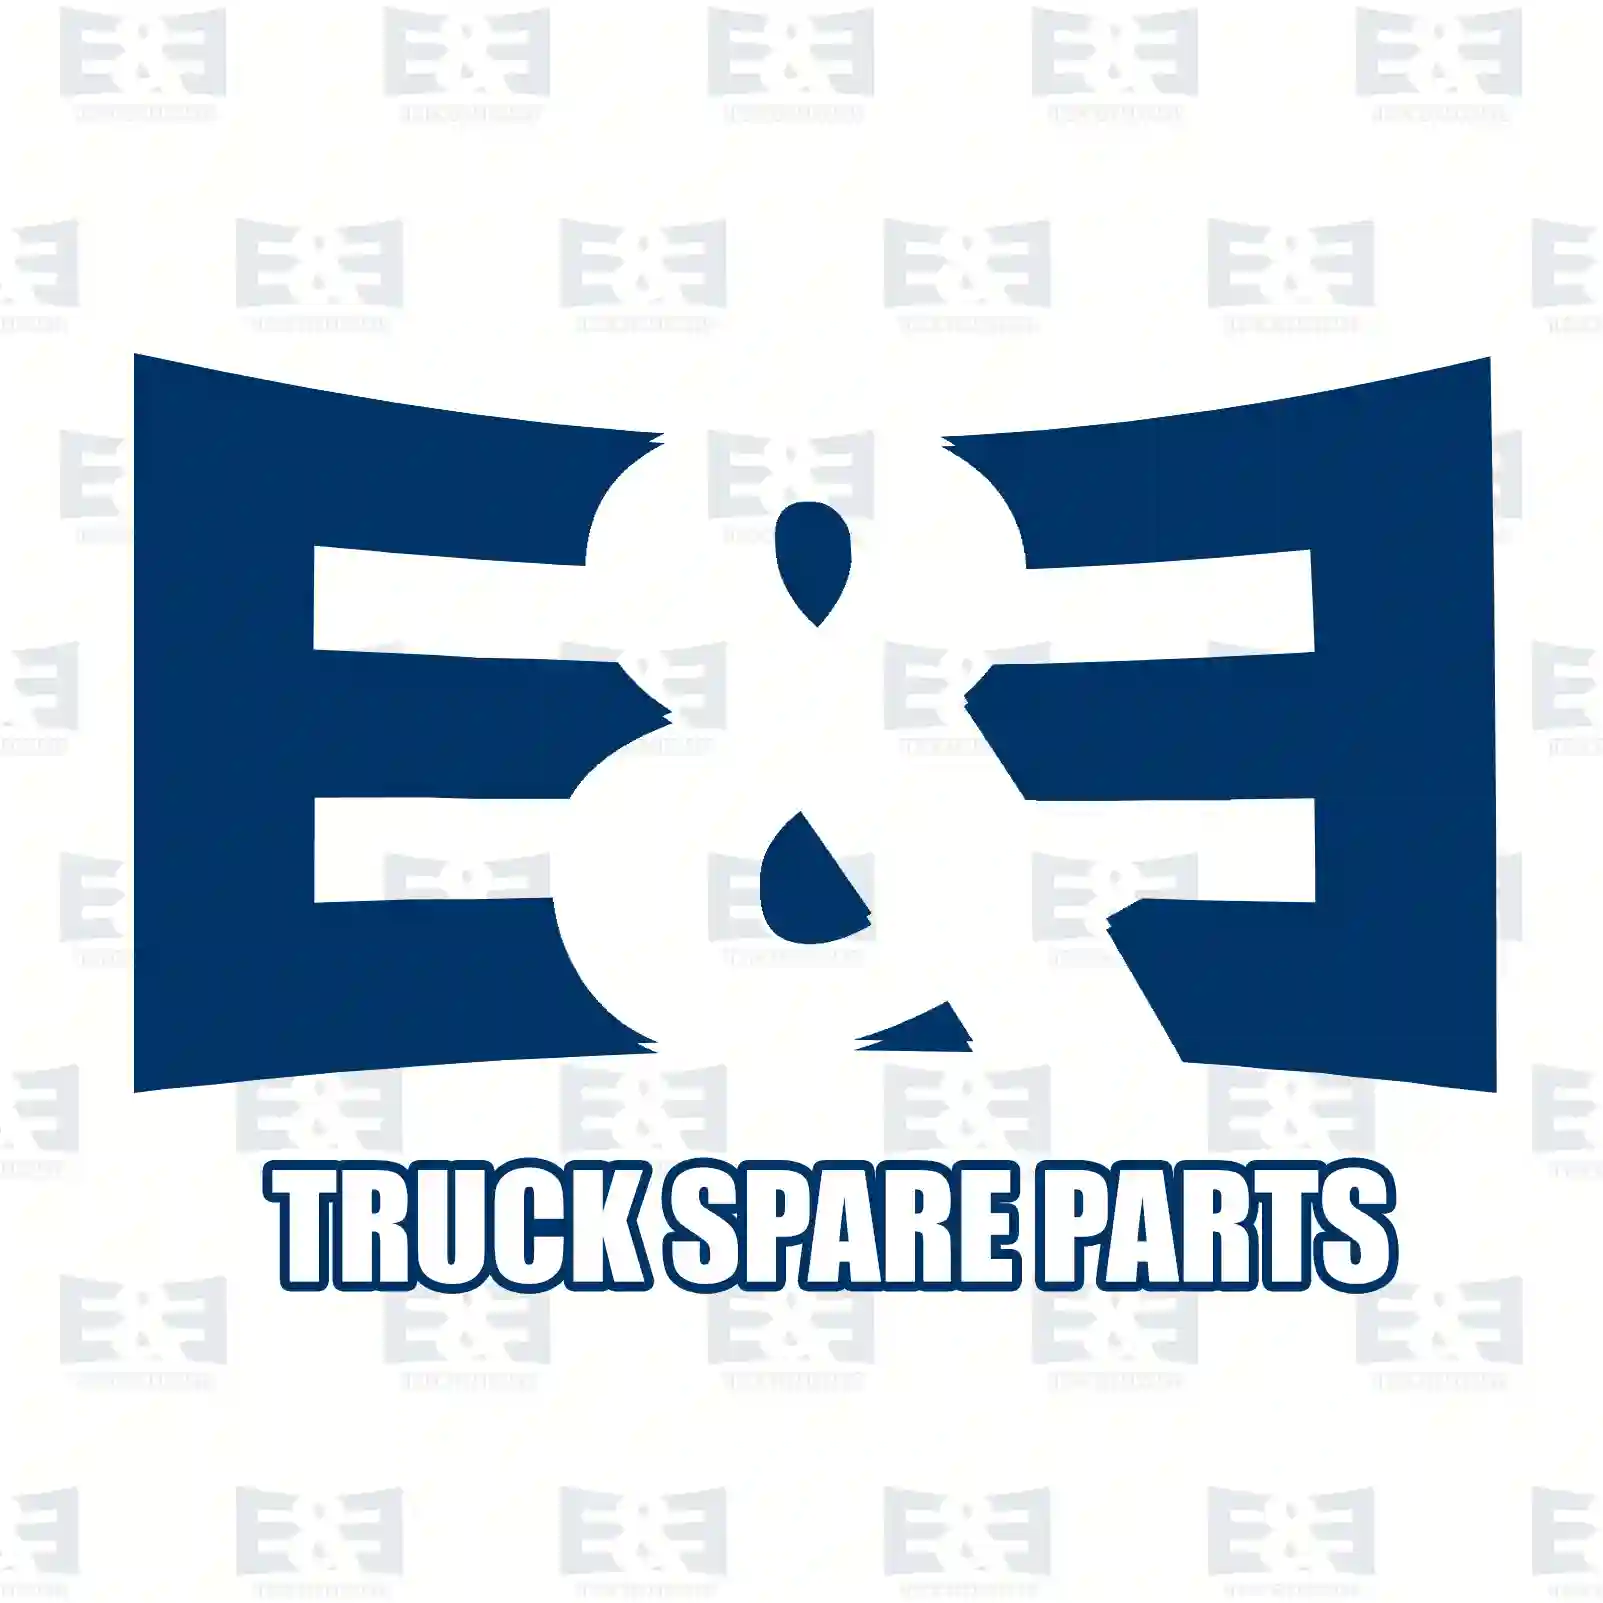 Screw, 2E2283562, 000960020123, 308765020010, 388124, , ||  2E2283562 E&E Truck Spare Parts | Truck Spare Parts, Auotomotive Spare Parts Screw, 2E2283562, 000960020123, 308765020010, 388124, , ||  2E2283562 E&E Truck Spare Parts | Truck Spare Parts, Auotomotive Spare Parts